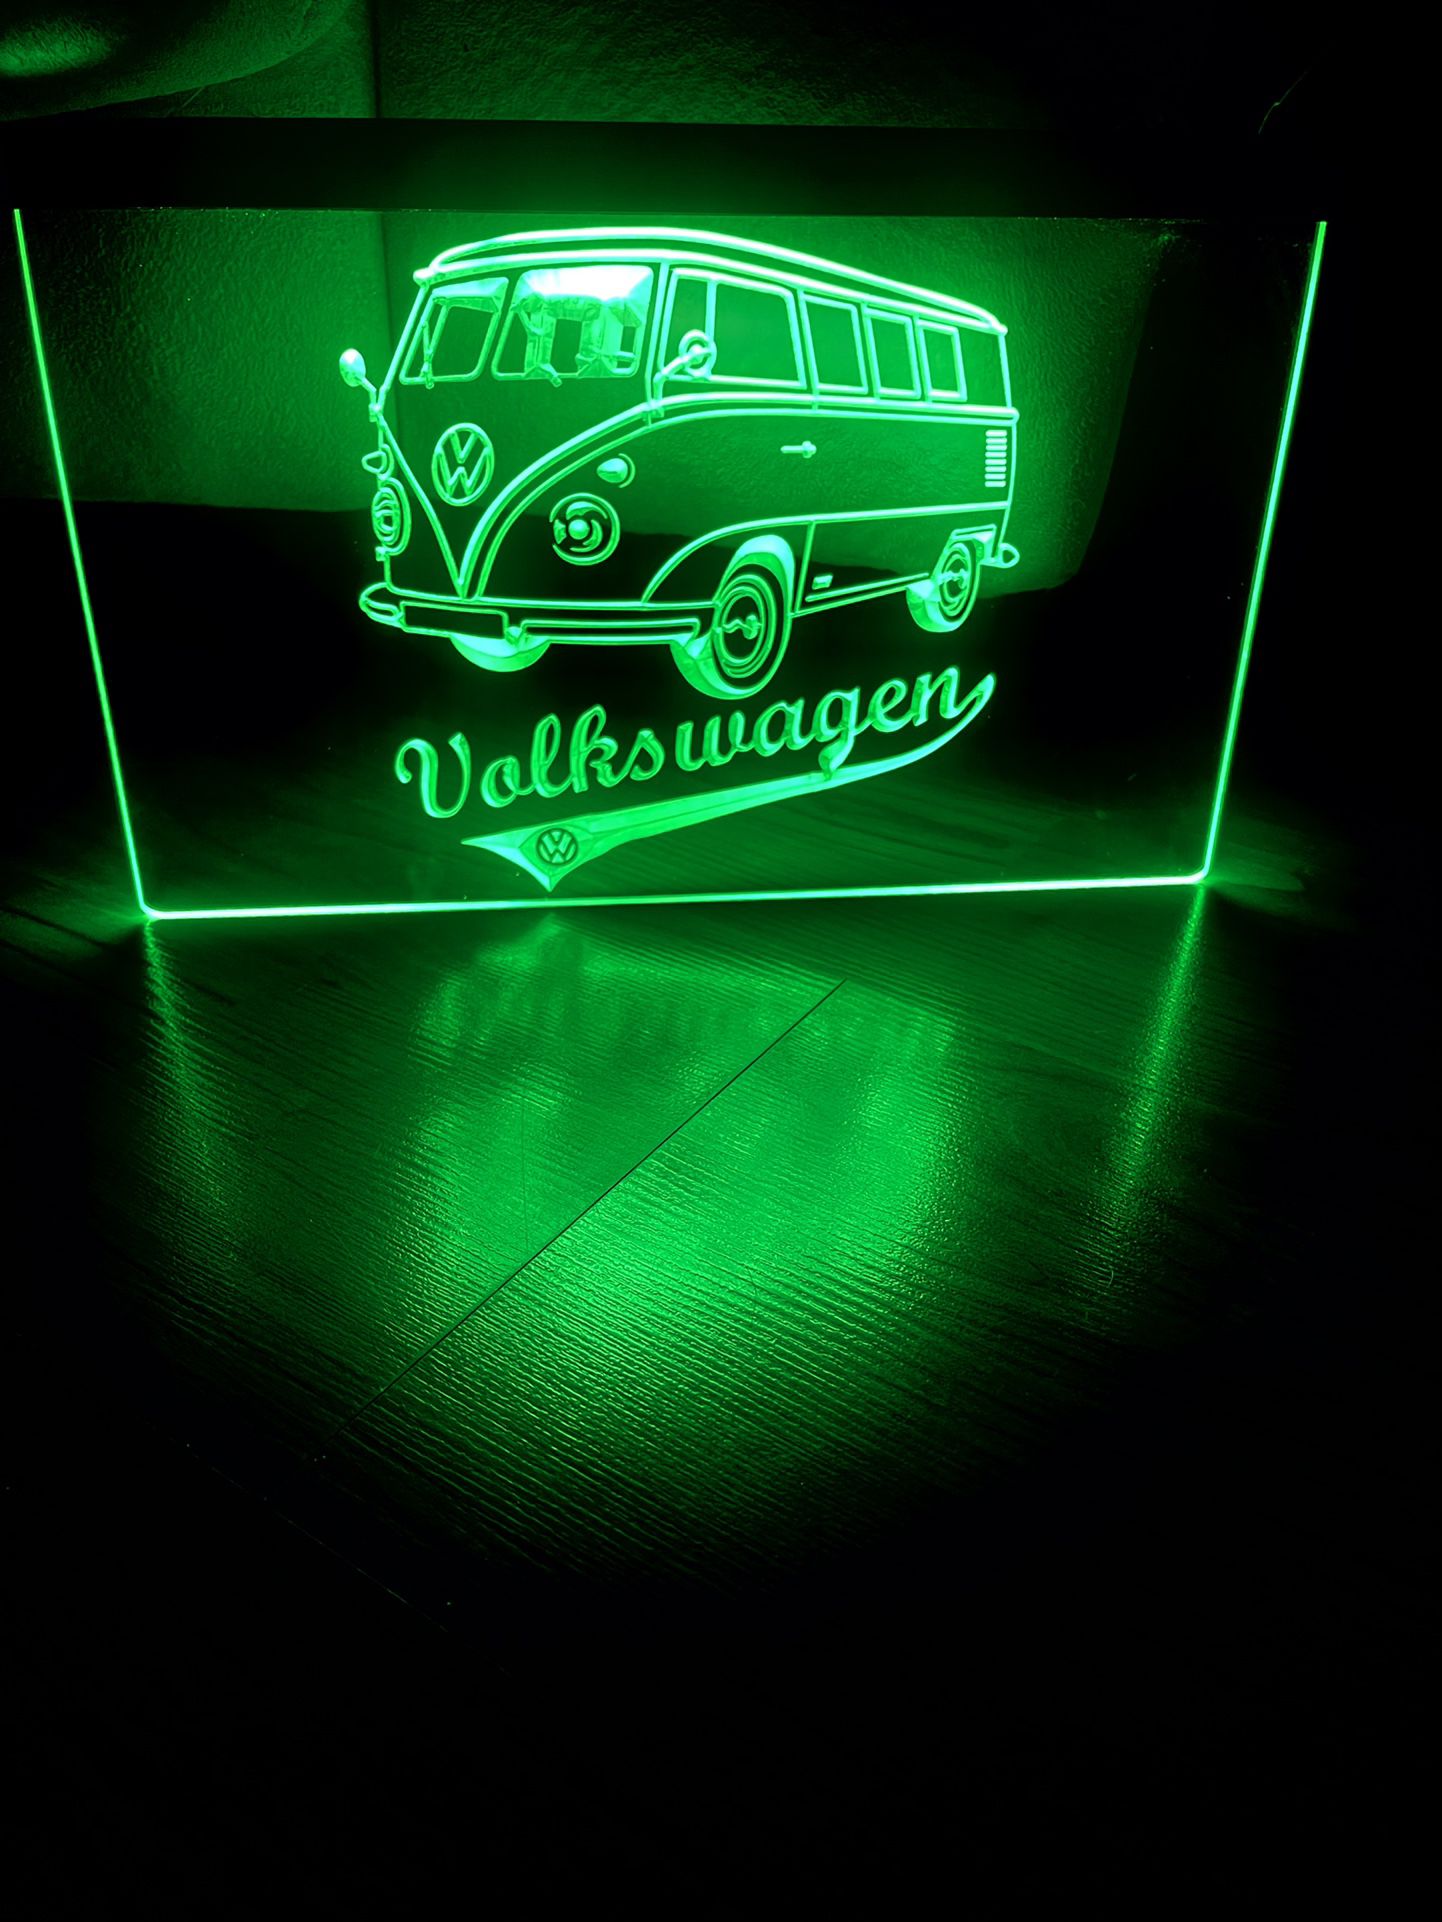 VW VOLKSWAGEN BUS LED NEON GREEN LIGHT SIGN 8x12